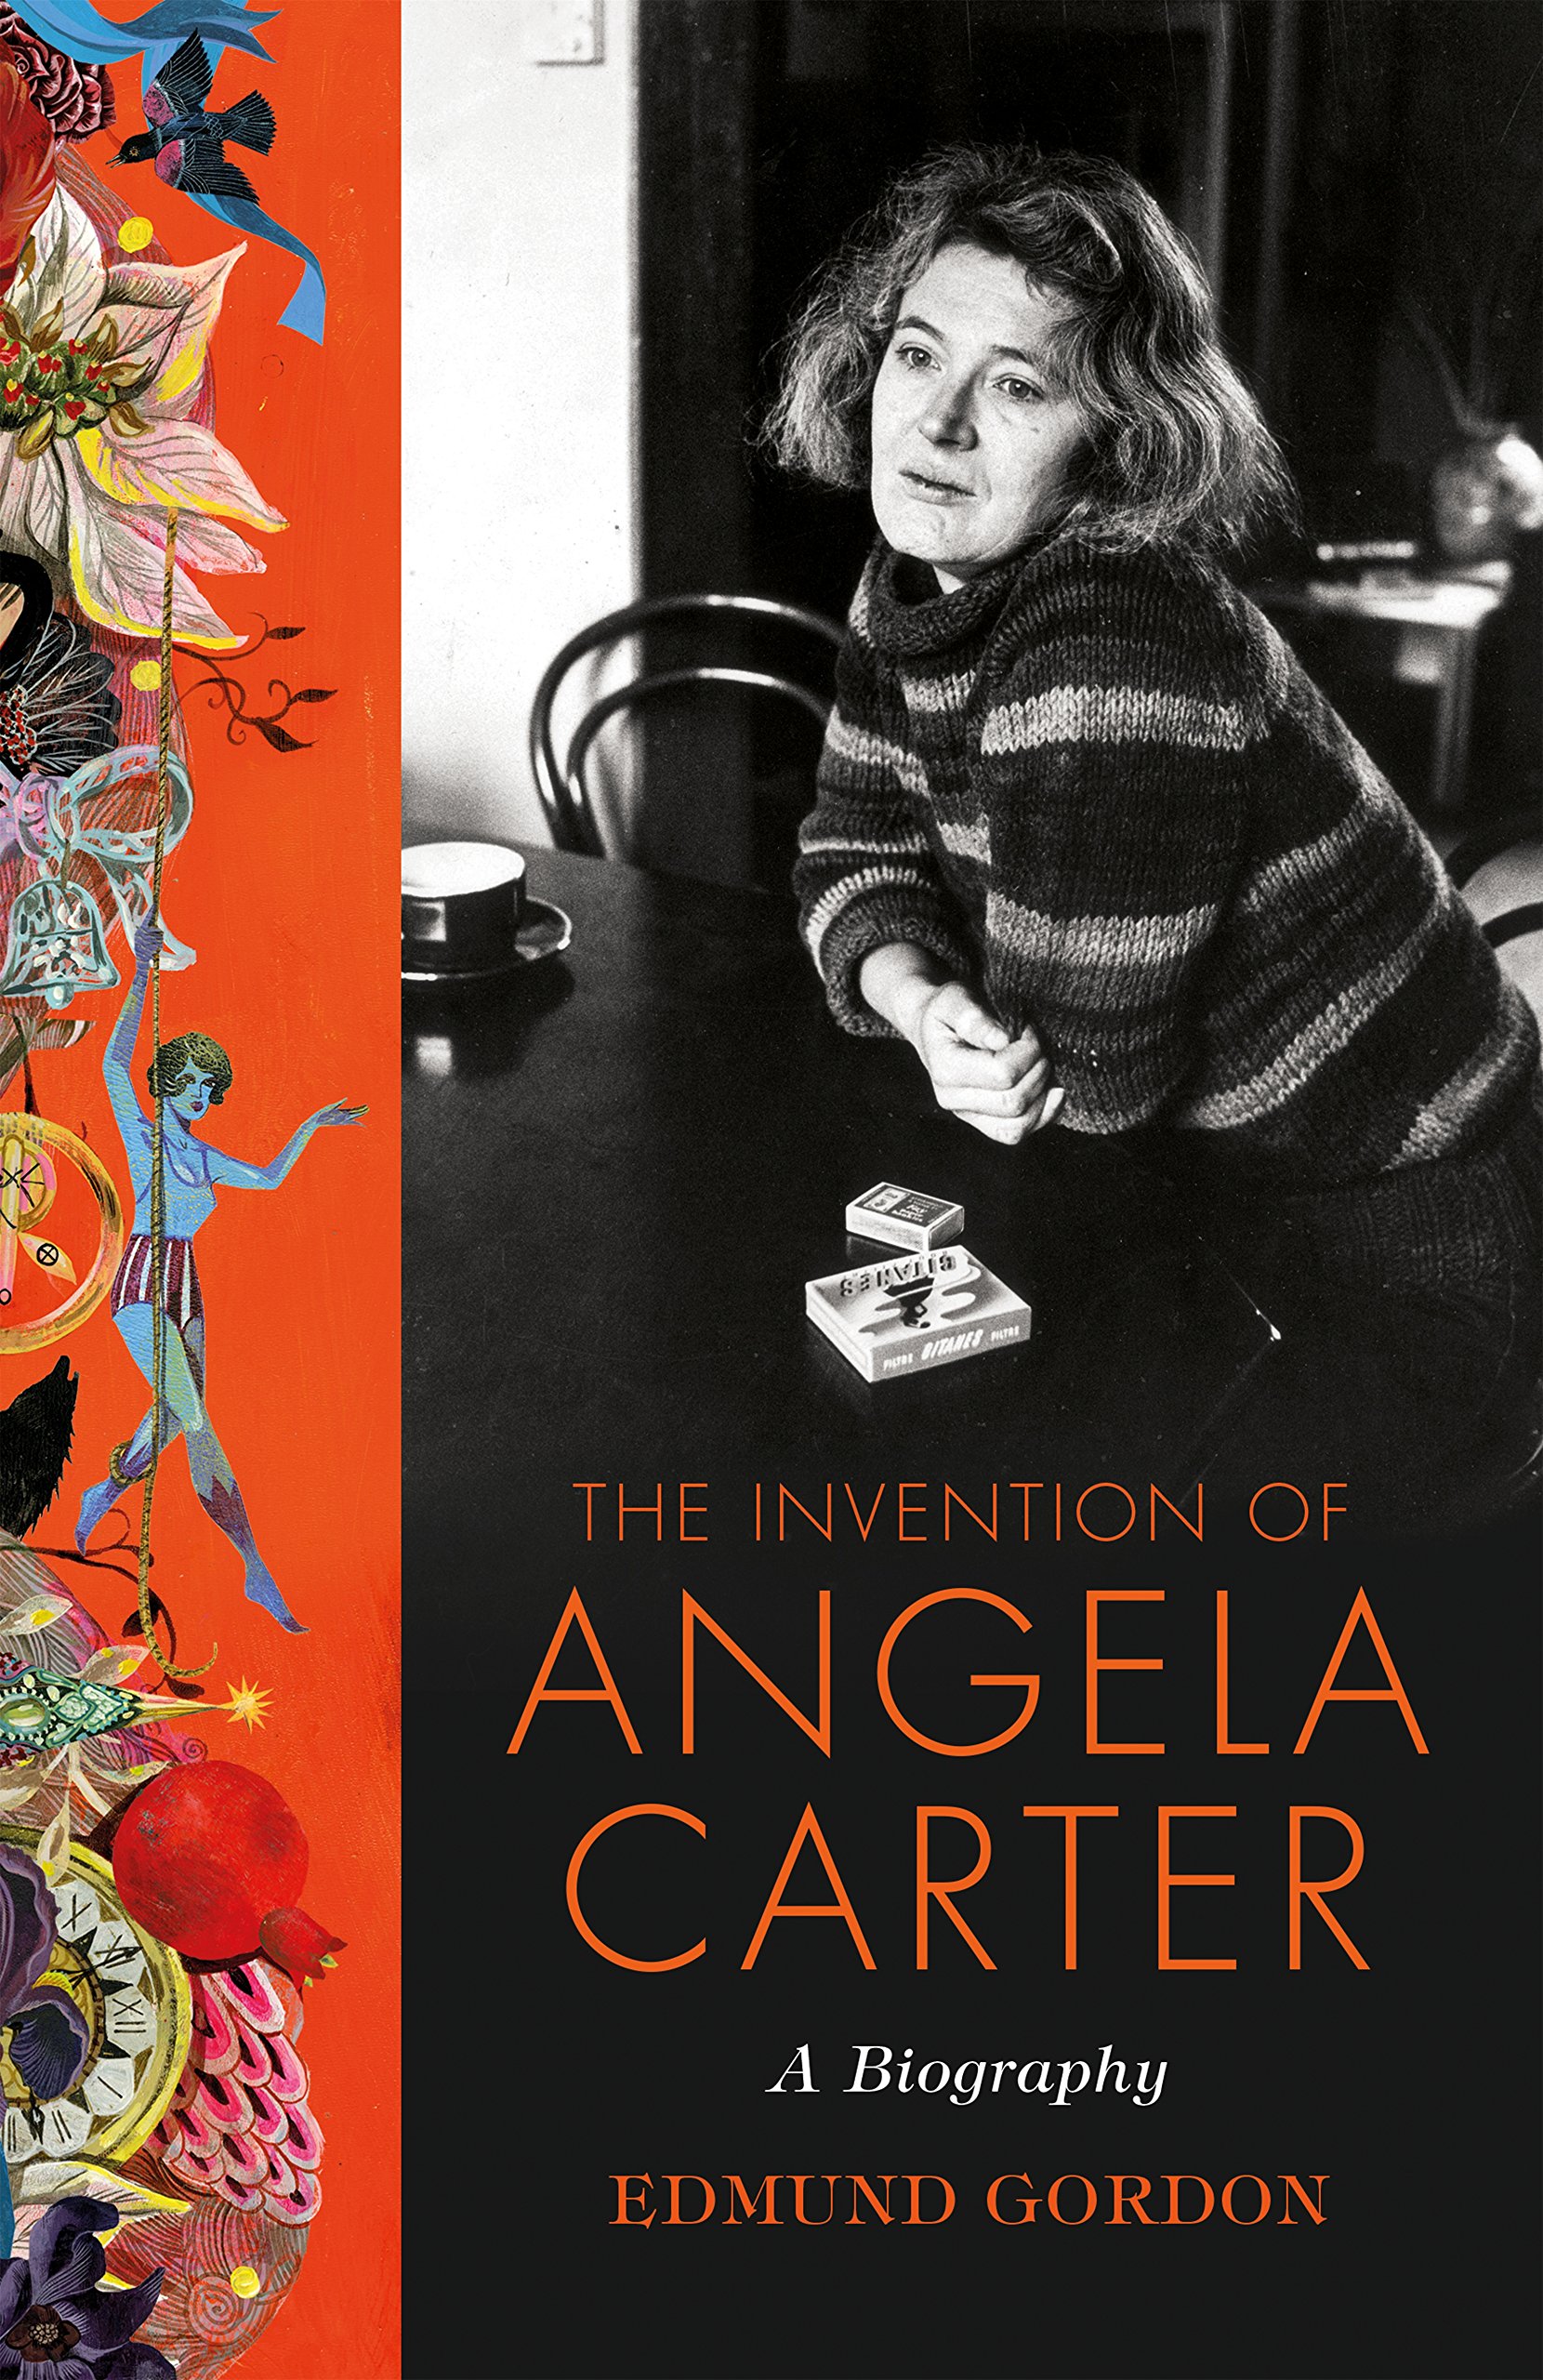 PDF) Angela Carter como tradutora: confluências entre criação literária e  tradução literária